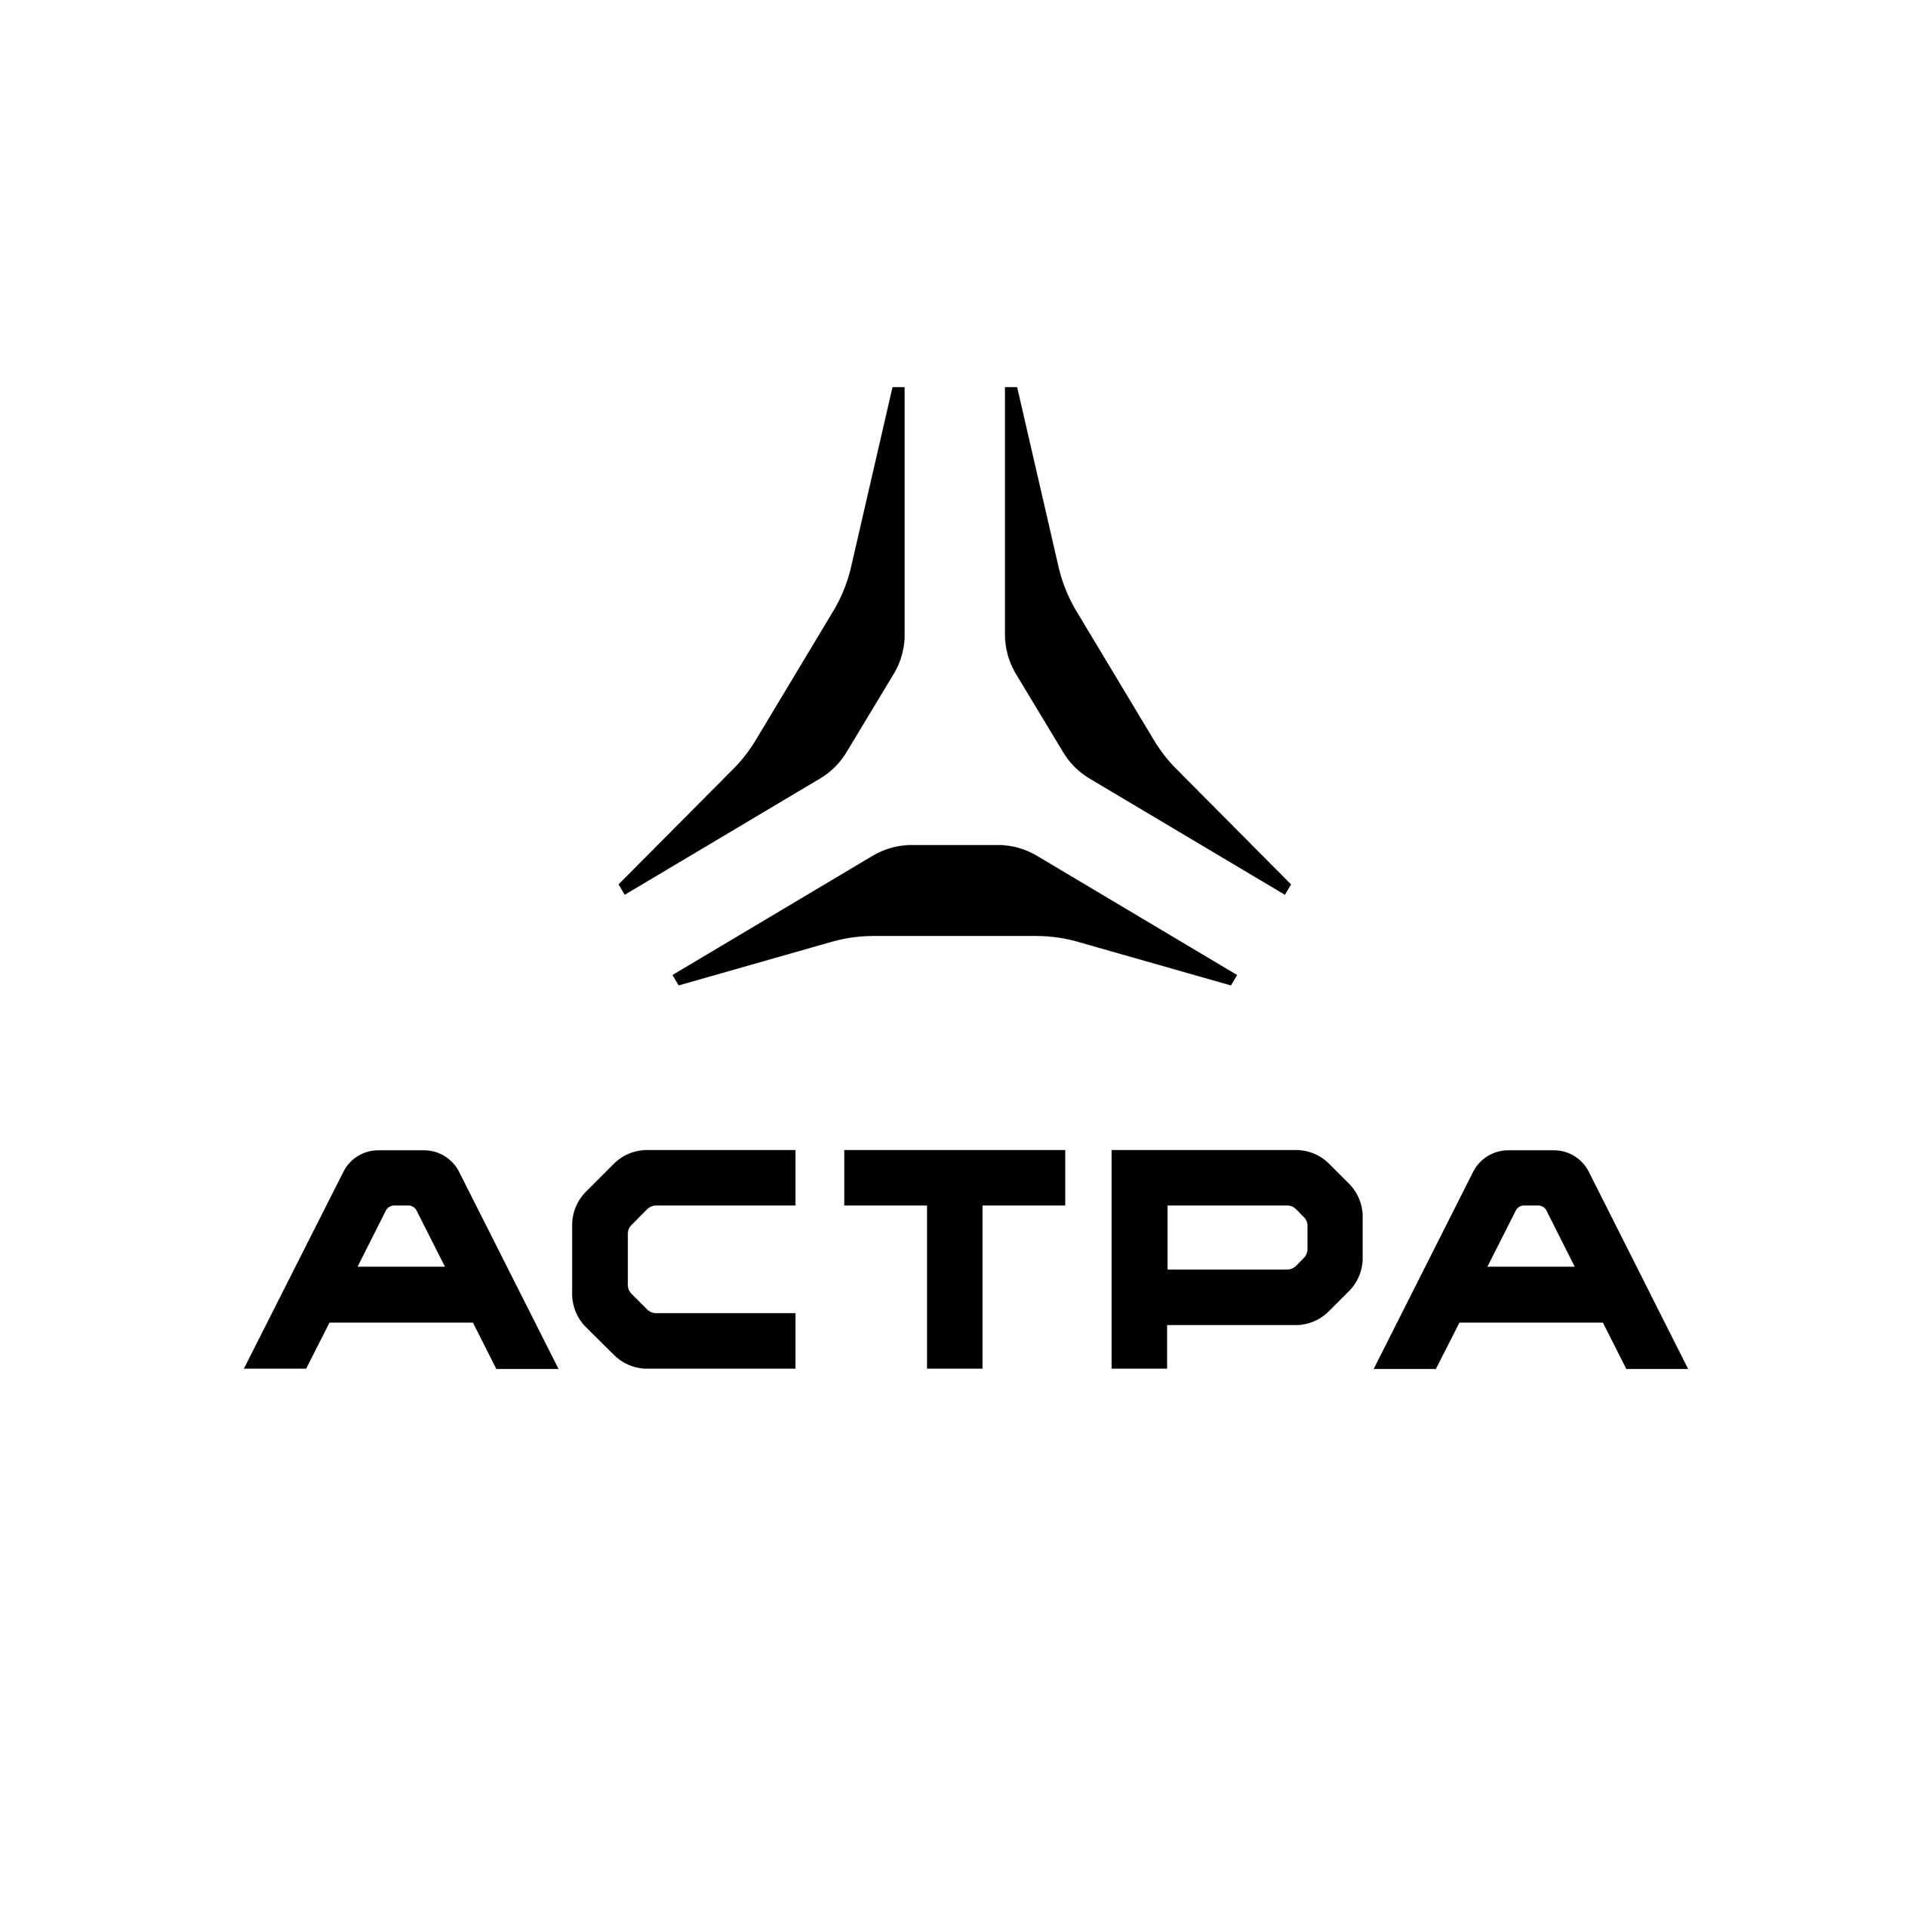 Астра logo